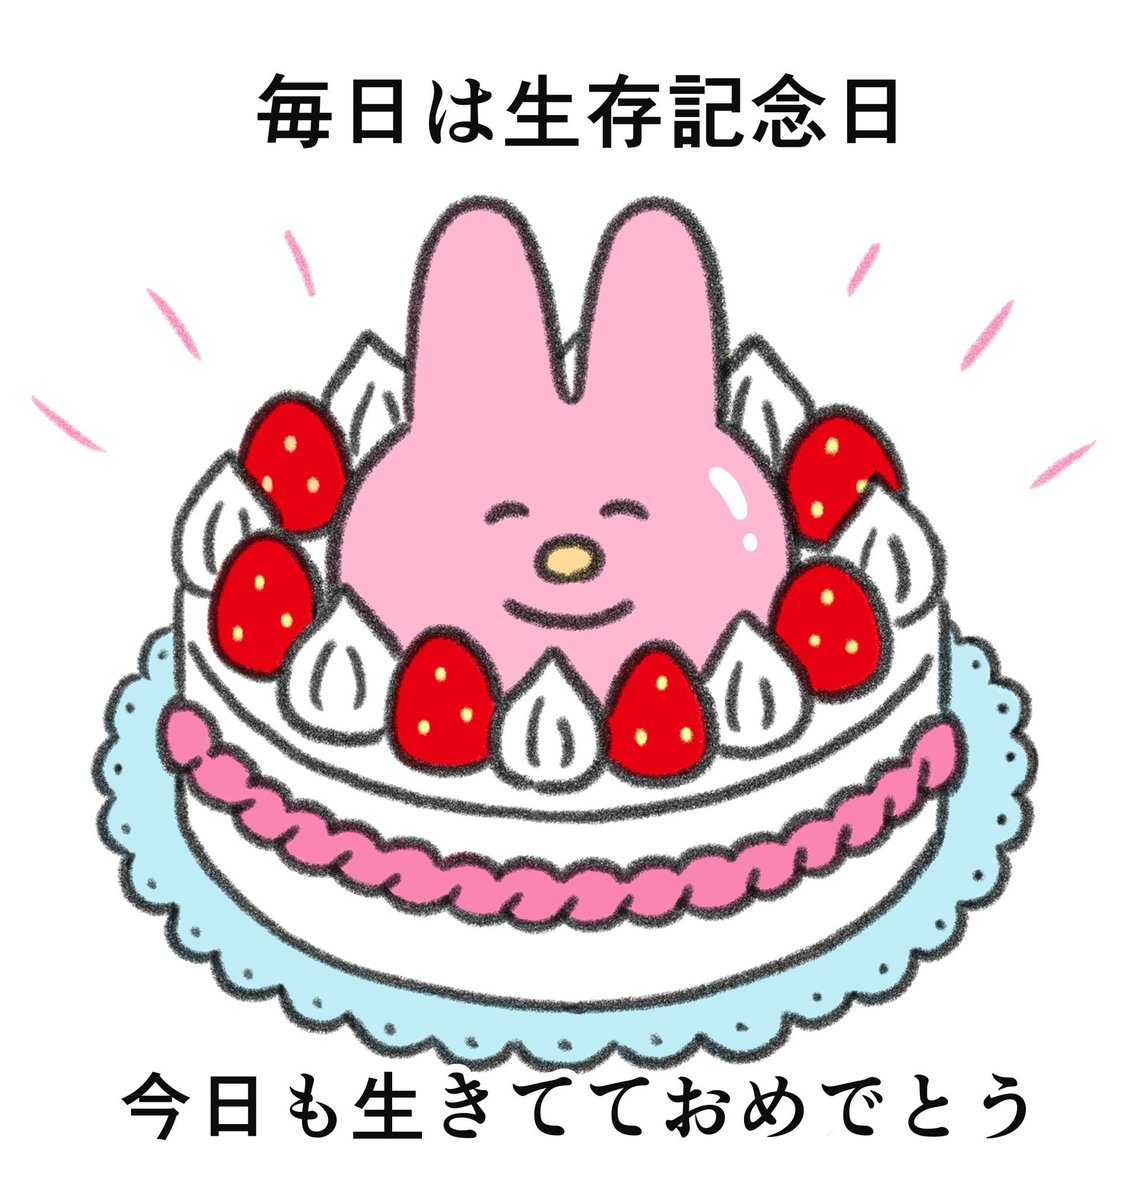 no humans food strawberry pokemon (creature) cake white background fruit  illustration images